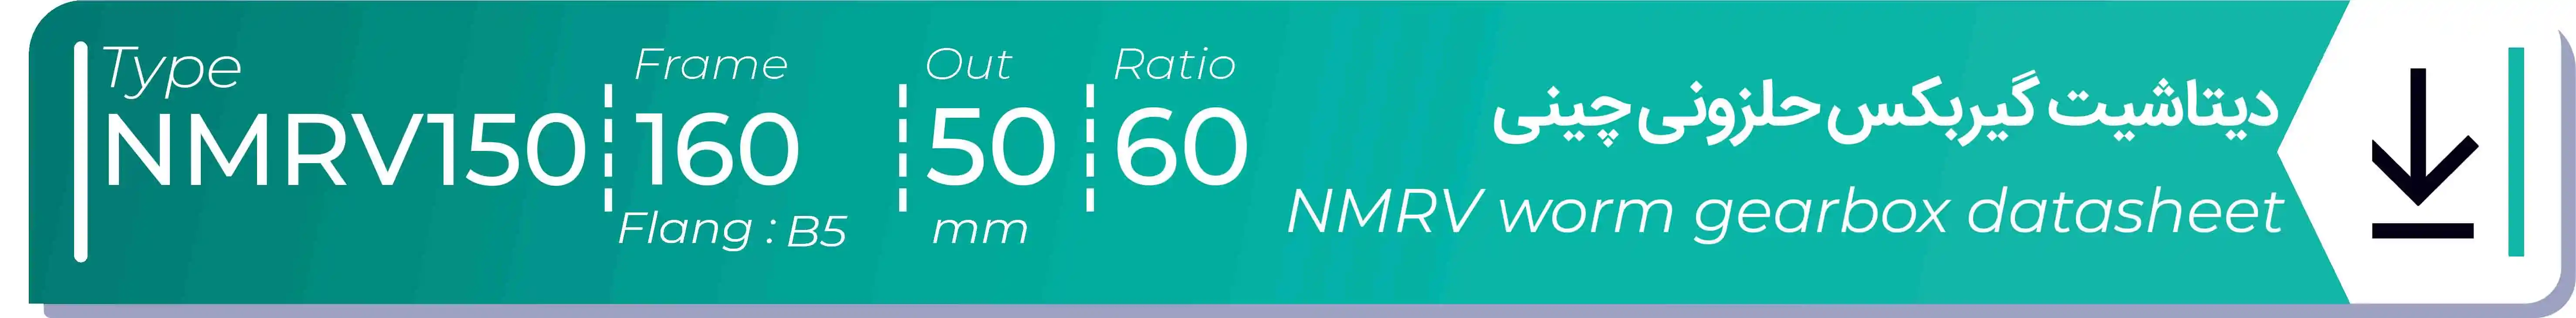  دیتاشیت و مشخصات فنی گیربکس حلزونی چینی   NMRV150  -  با خروجی 50- میلی متر و نسبت60 و فریم 160